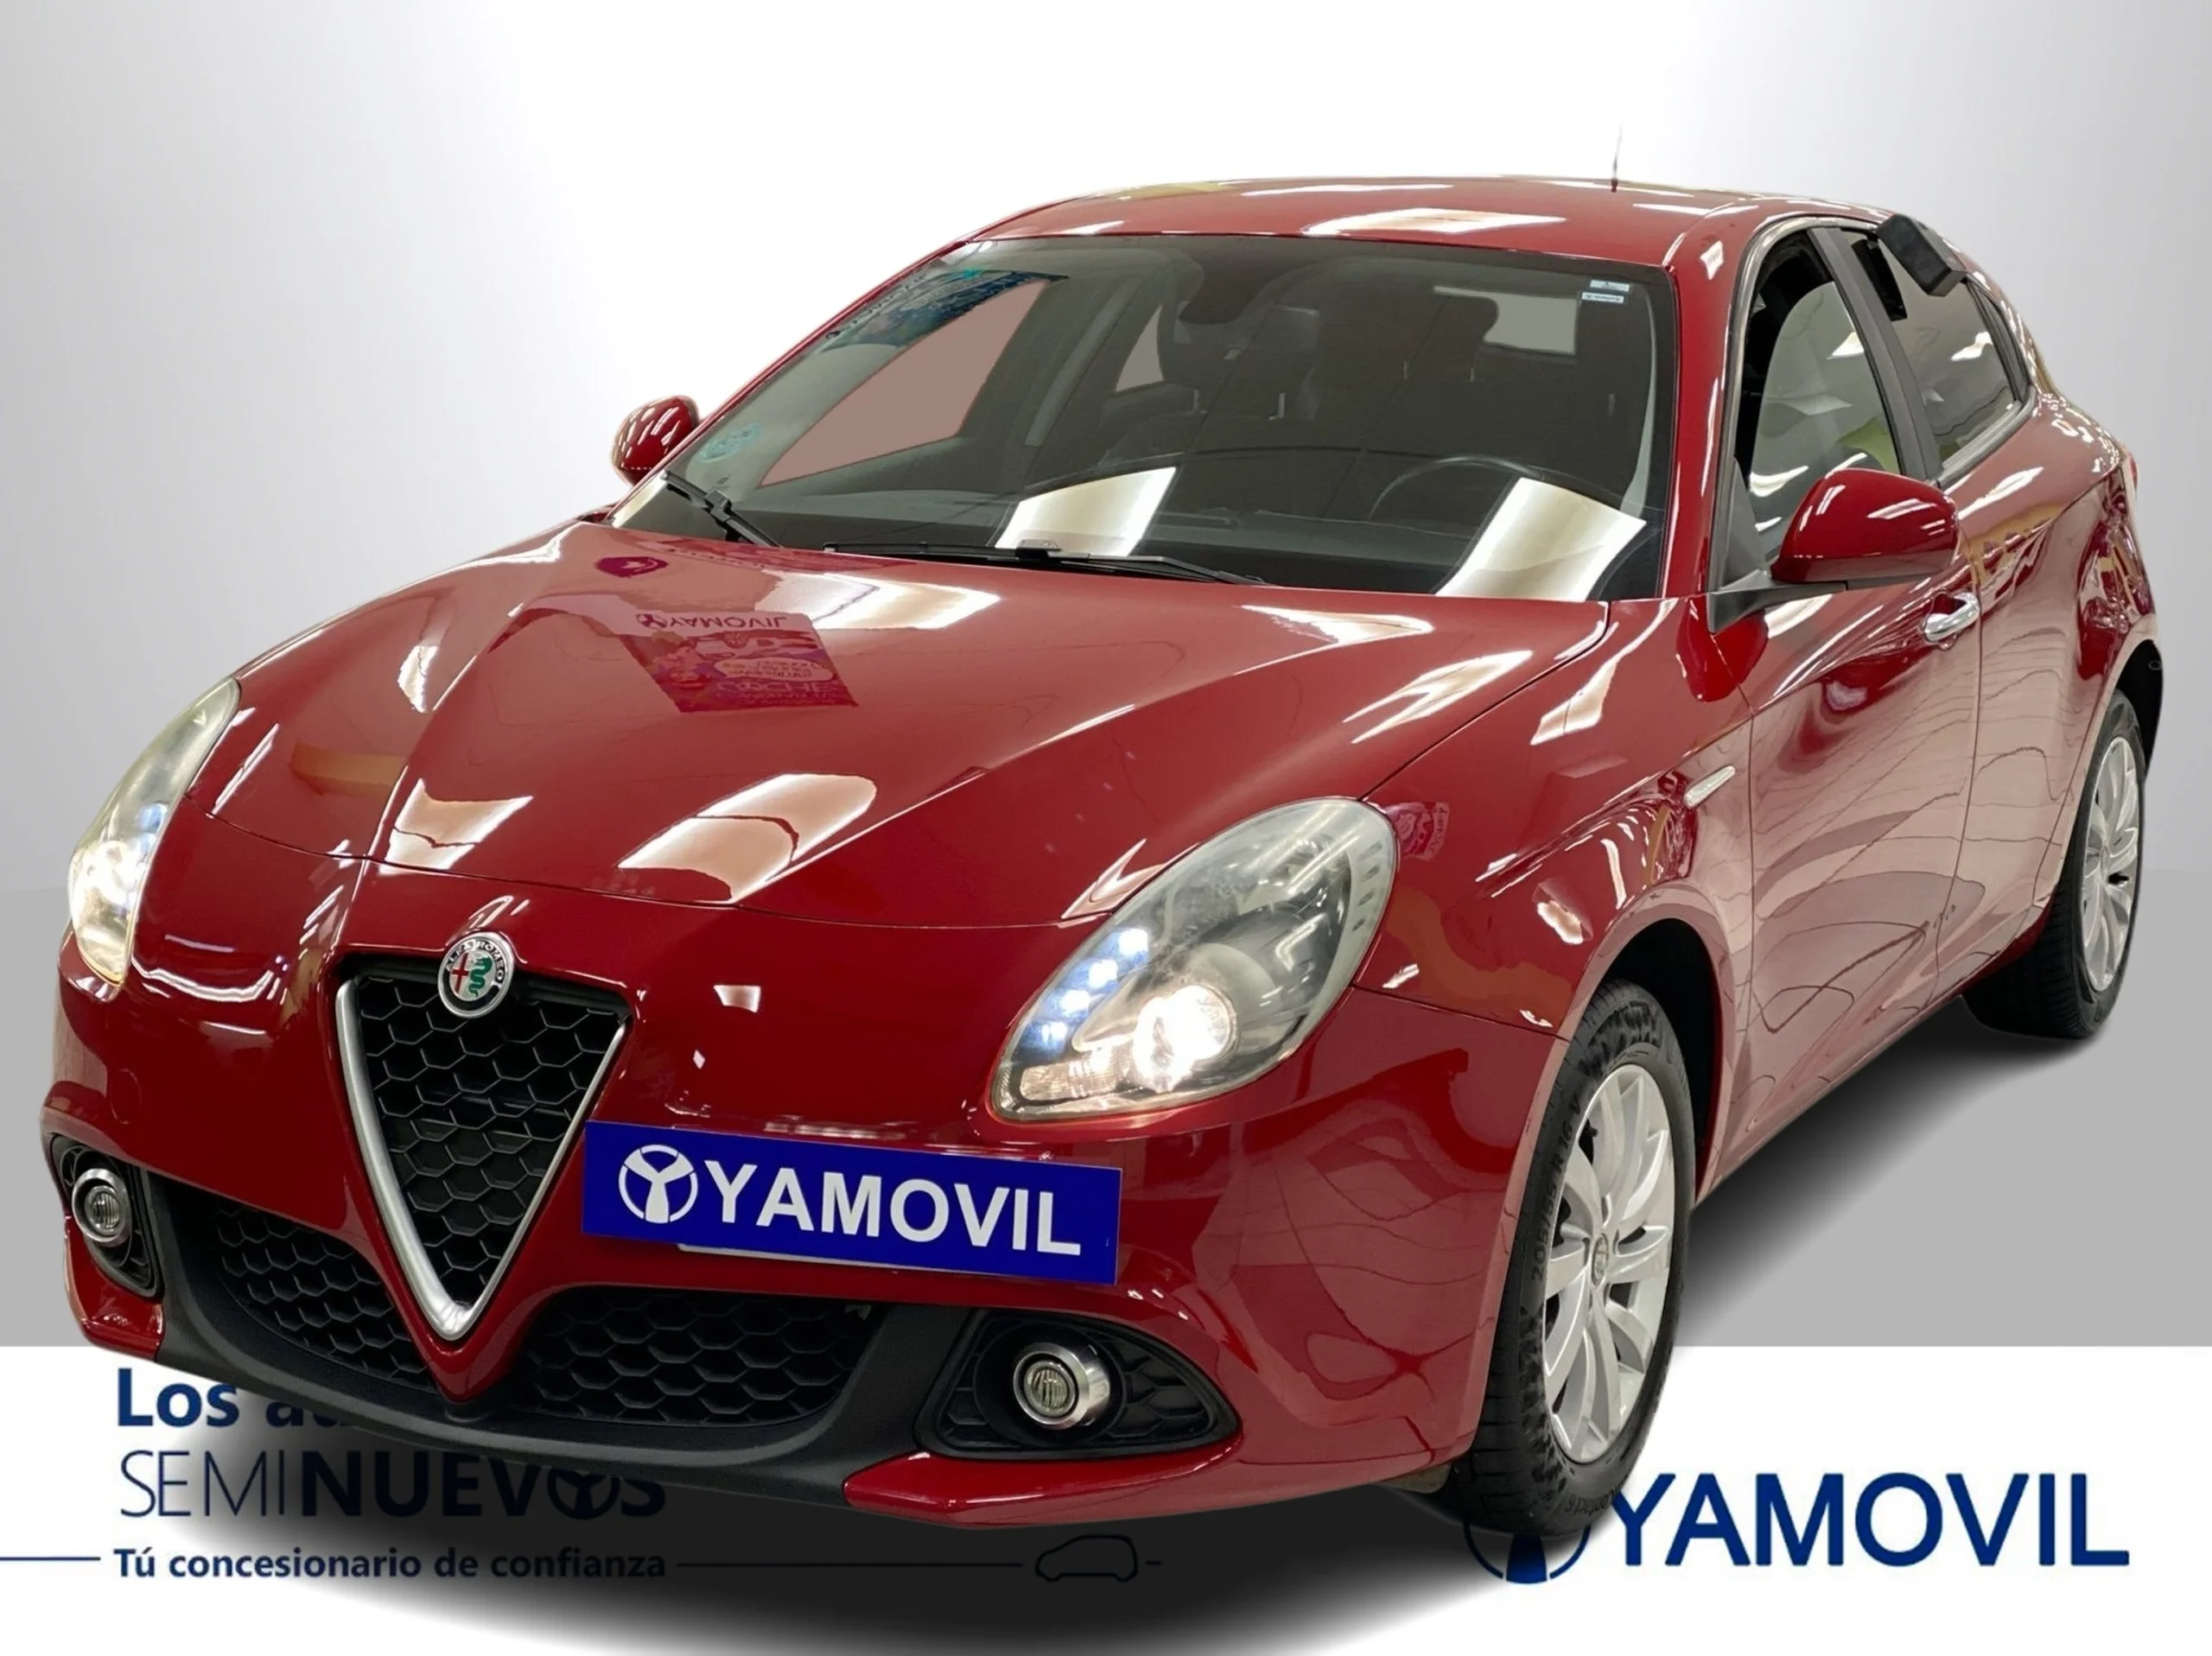 Alfa Romeo Giulietta 1.6 JTD Giulietta 88 kW (120 CV) - Foto 3